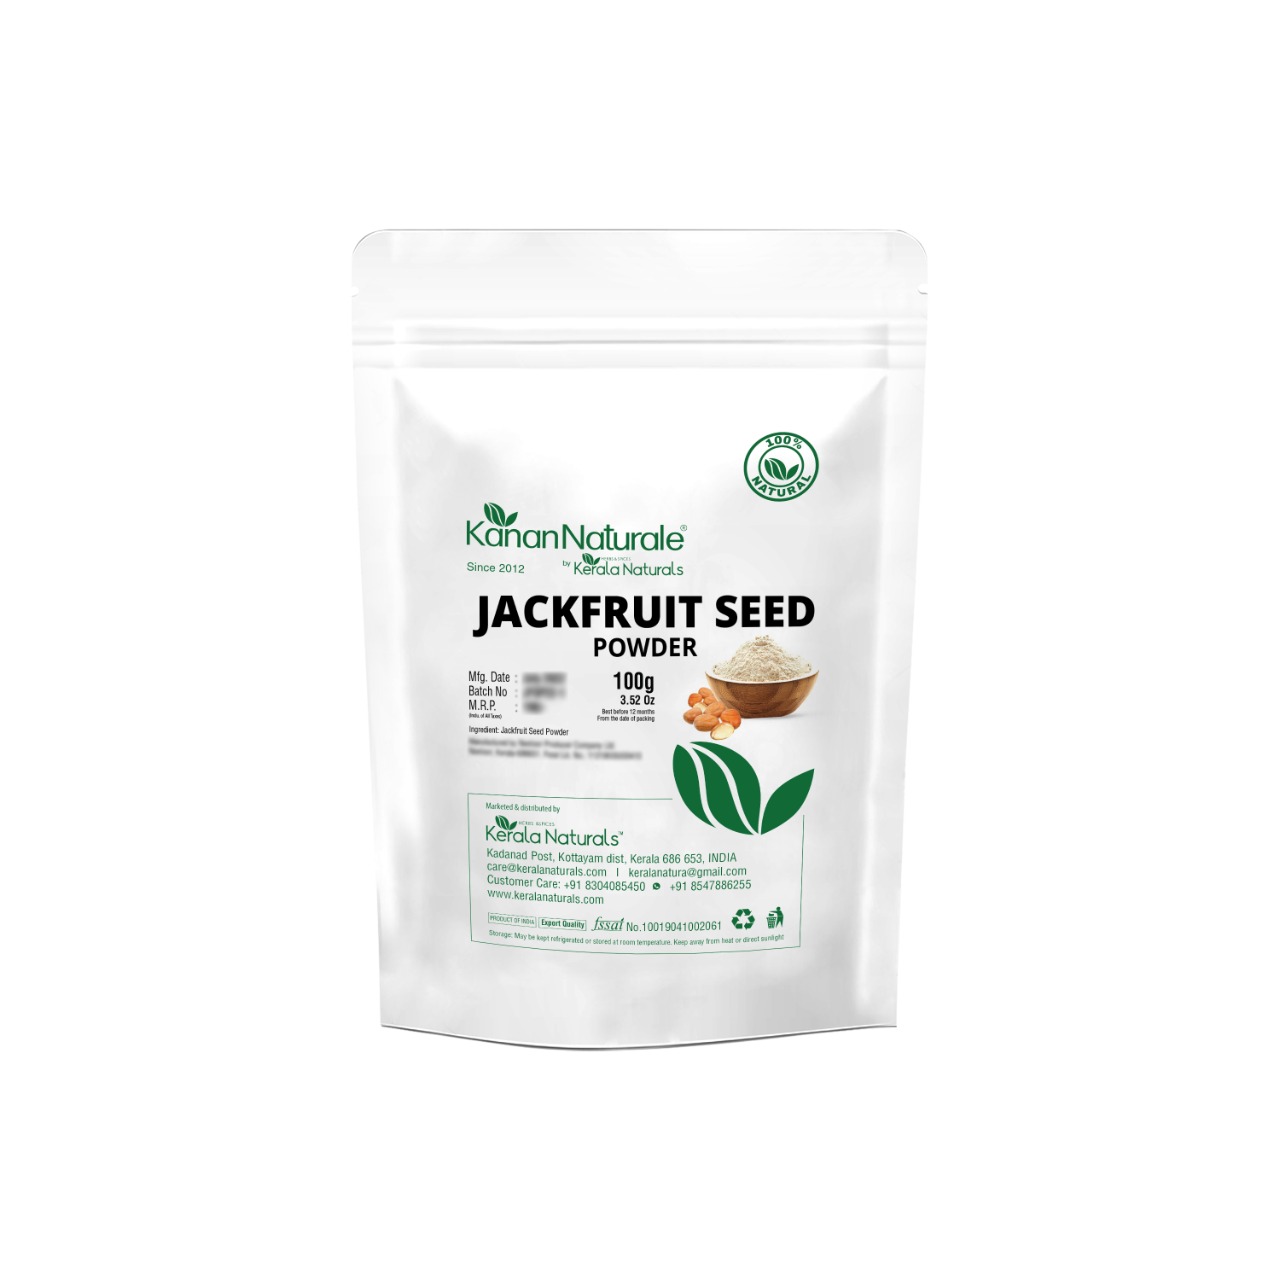 Buy Kanan Naturale Jackfruit Seed Powder at Best Price Online